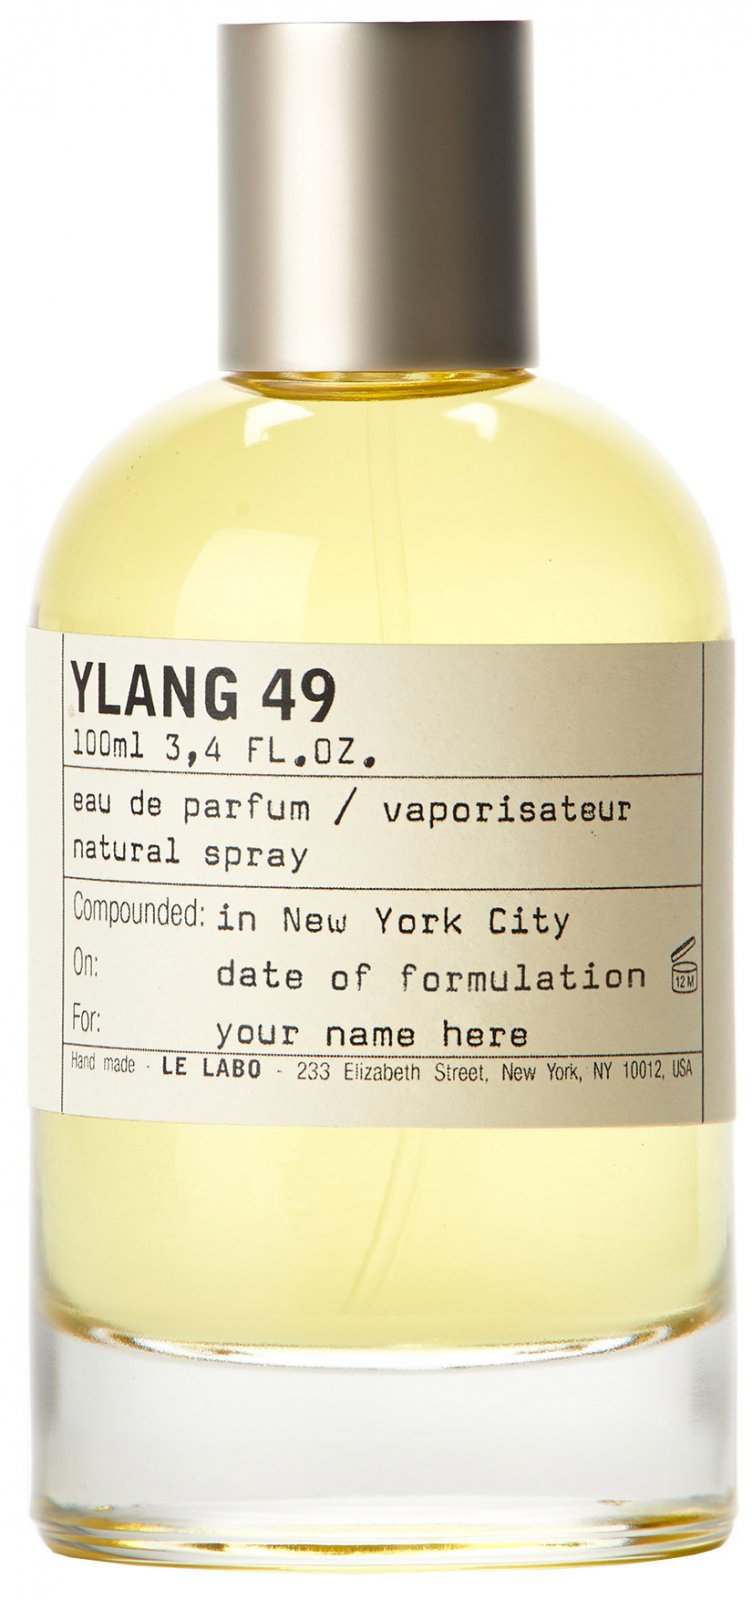 Le Labo Ylang 49 - Eau de Parfum | Ingredients